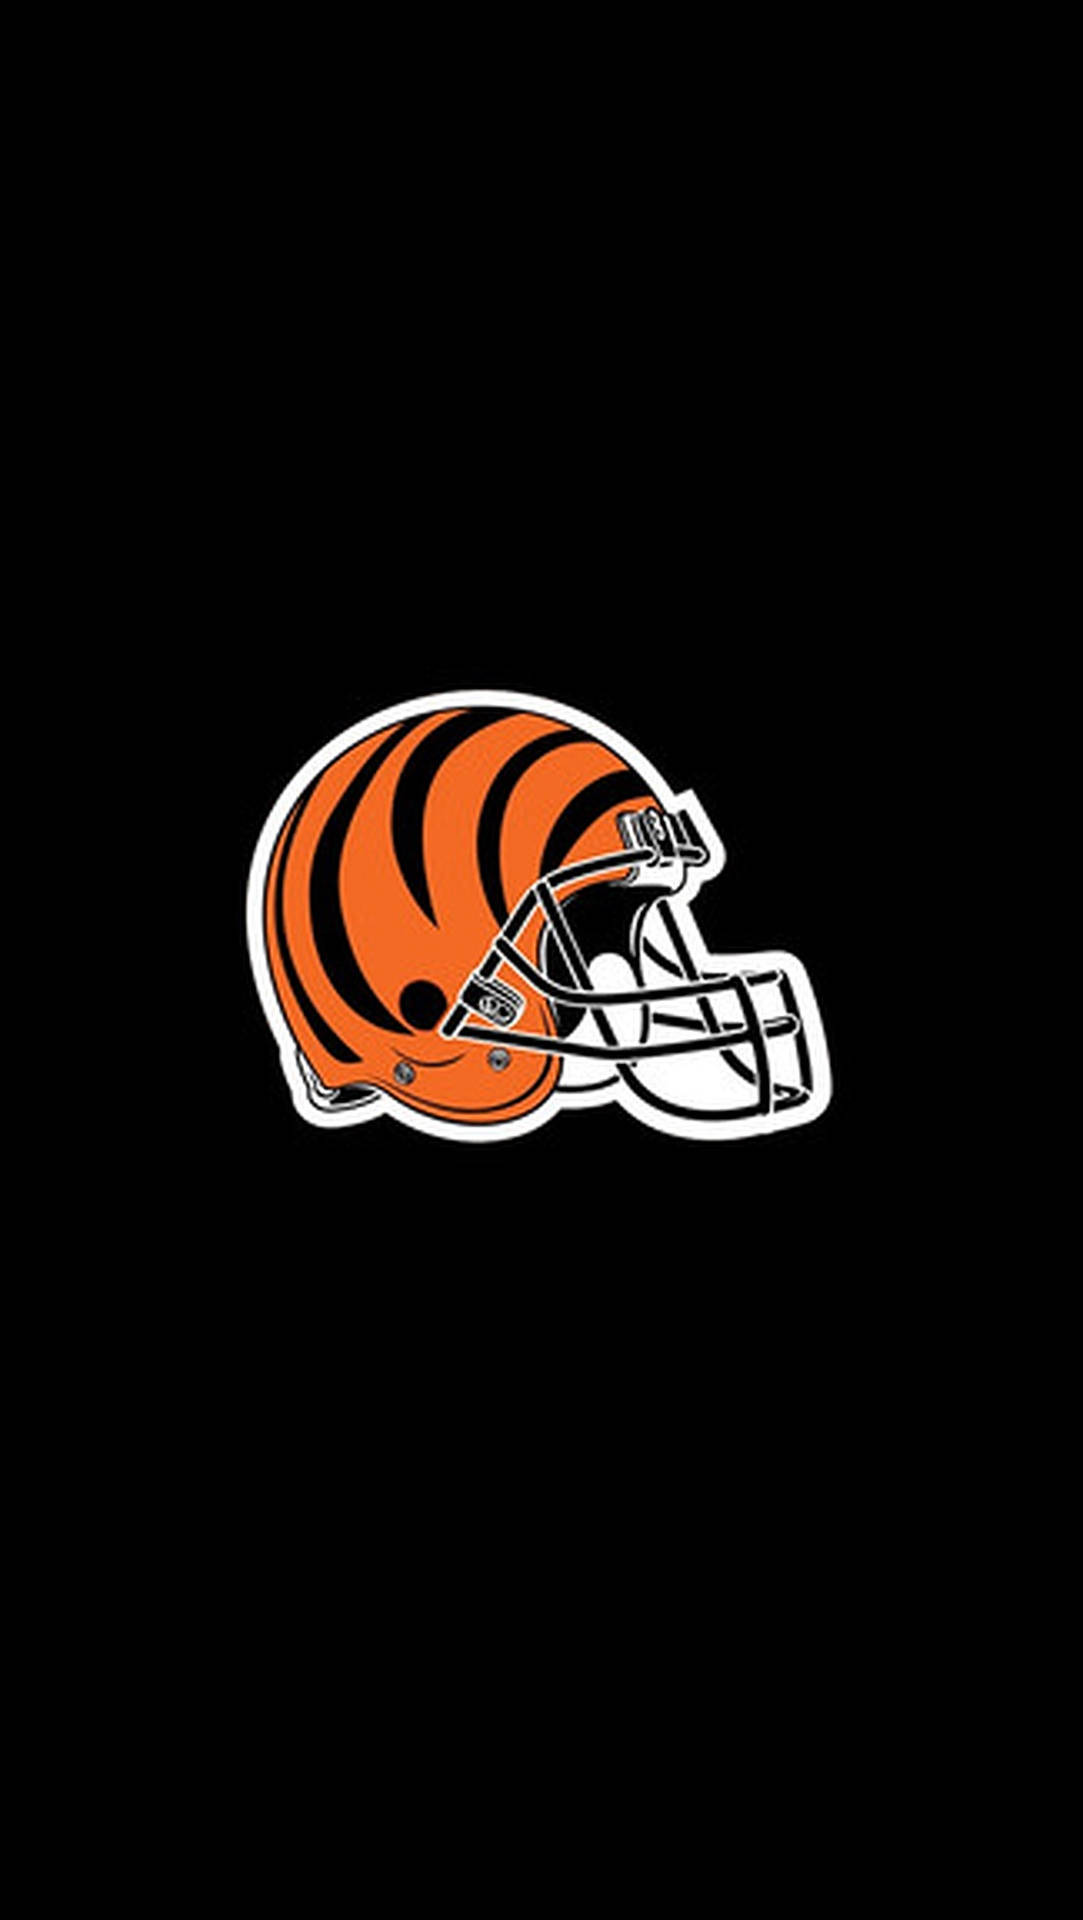 Cincinnati Bengals Helmet Emblem Wallpaper